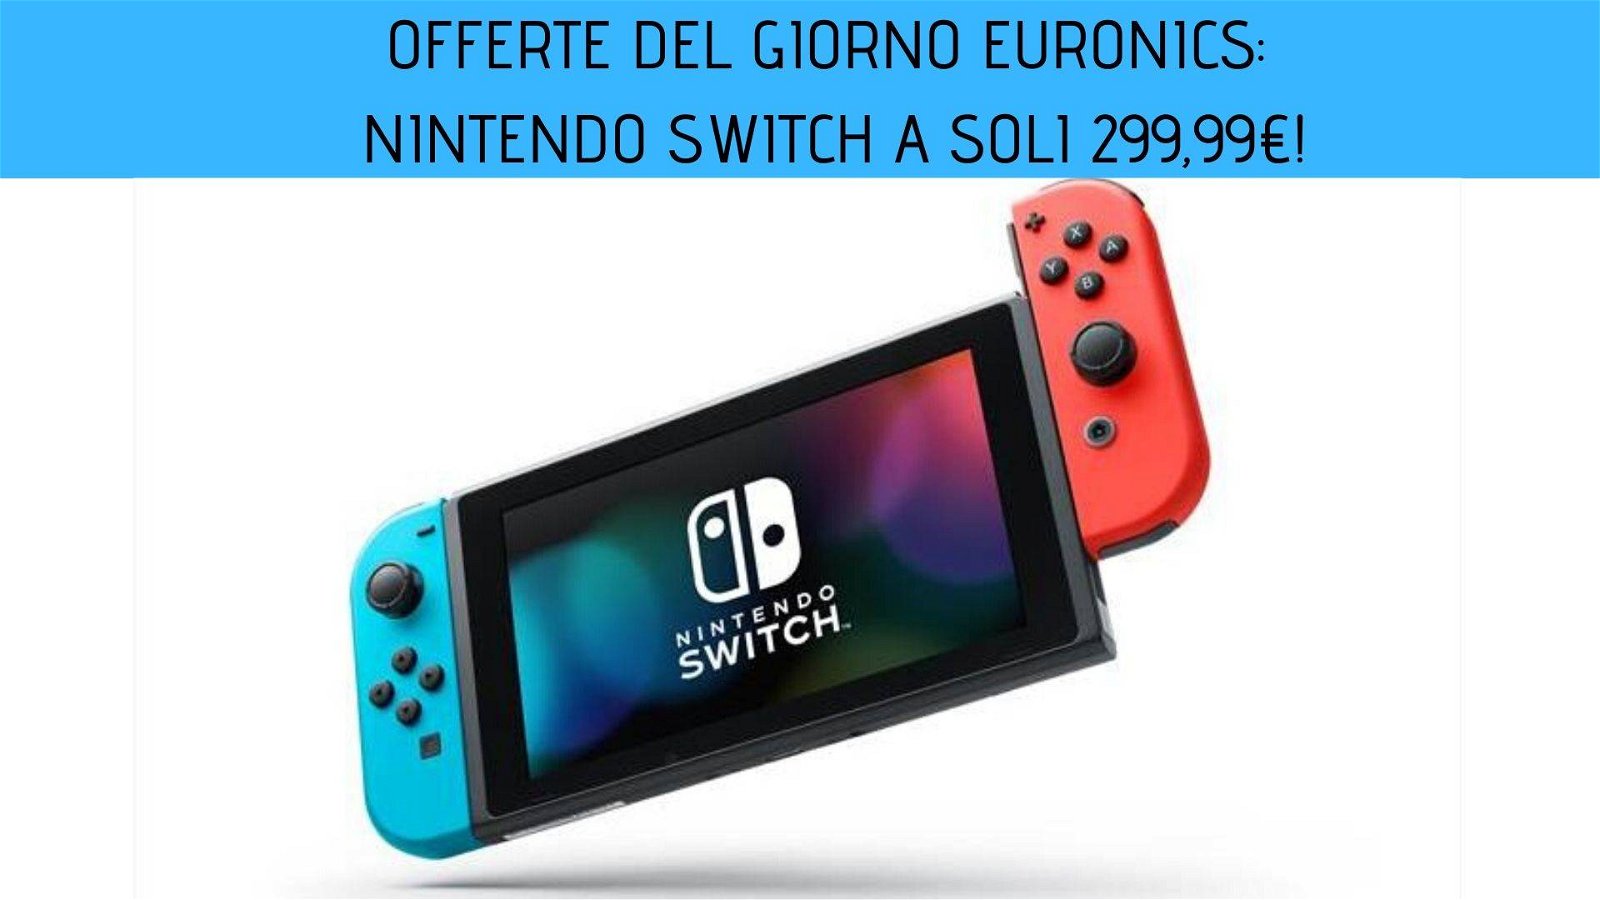 Immagine di Offerte del giorno Euronics: Nintendo Switch a soli 299,99€!